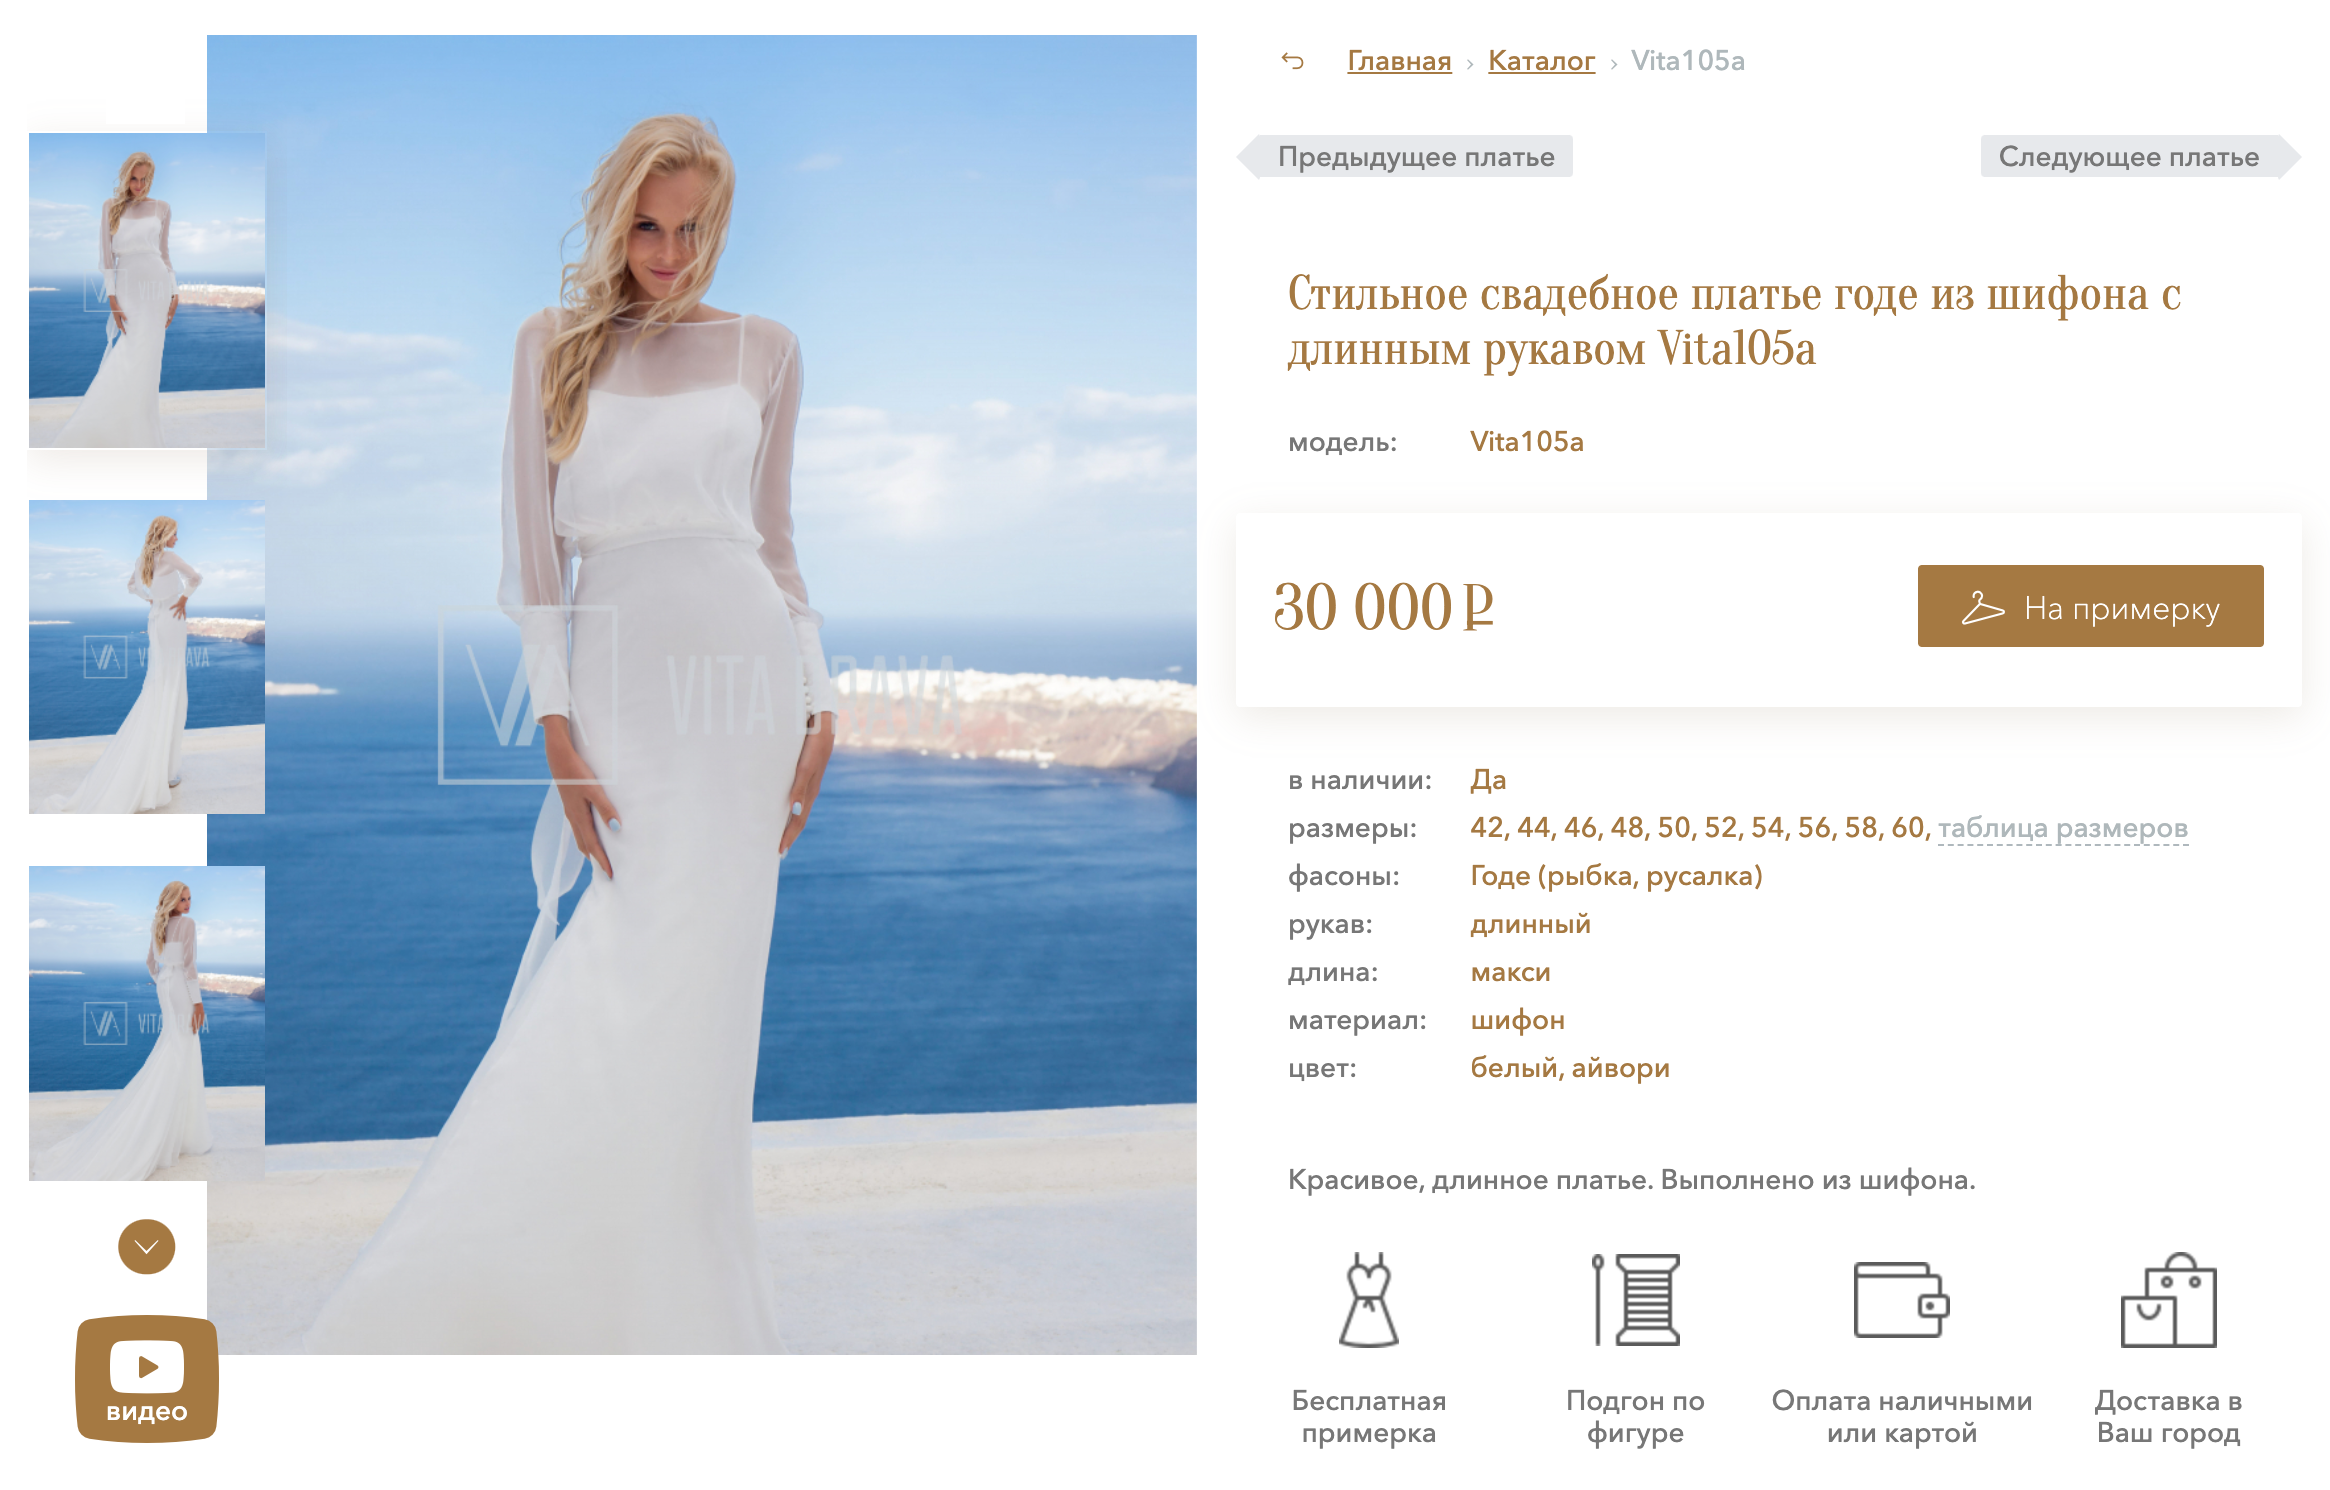 Свадебный салон приглашает выбрать платье вживую. Для этого на сайте вместо кнопки «Купить» есть кнопка «На примерку», чтобы покупательницы приезжали в салон. Источник: vitabrava.ru